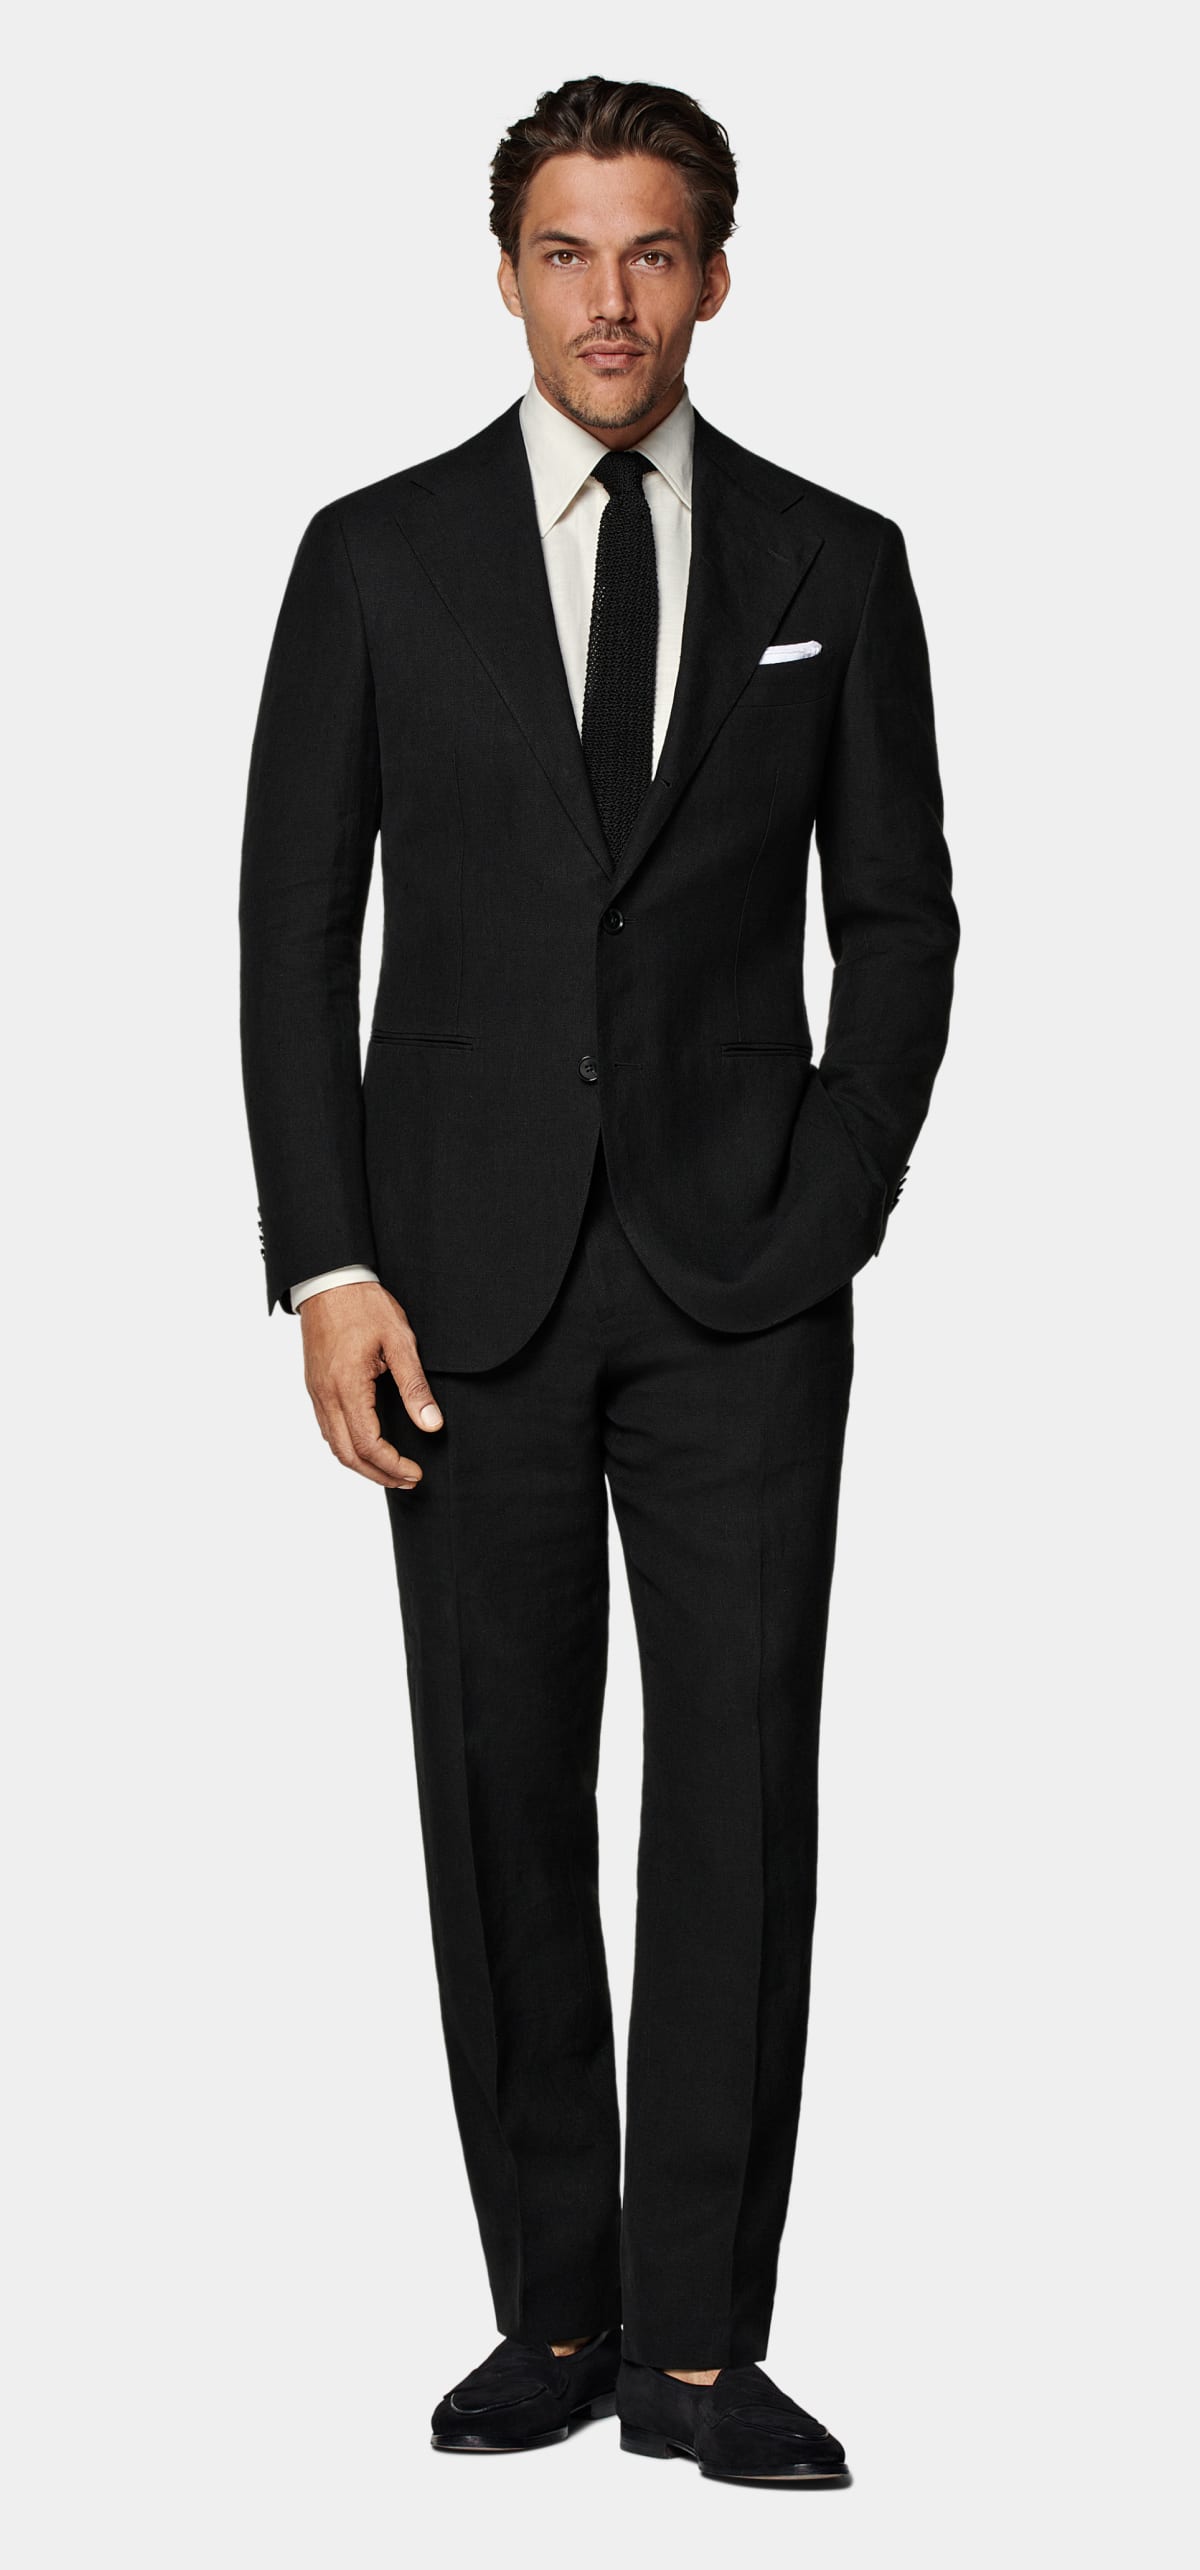 Shop the suit